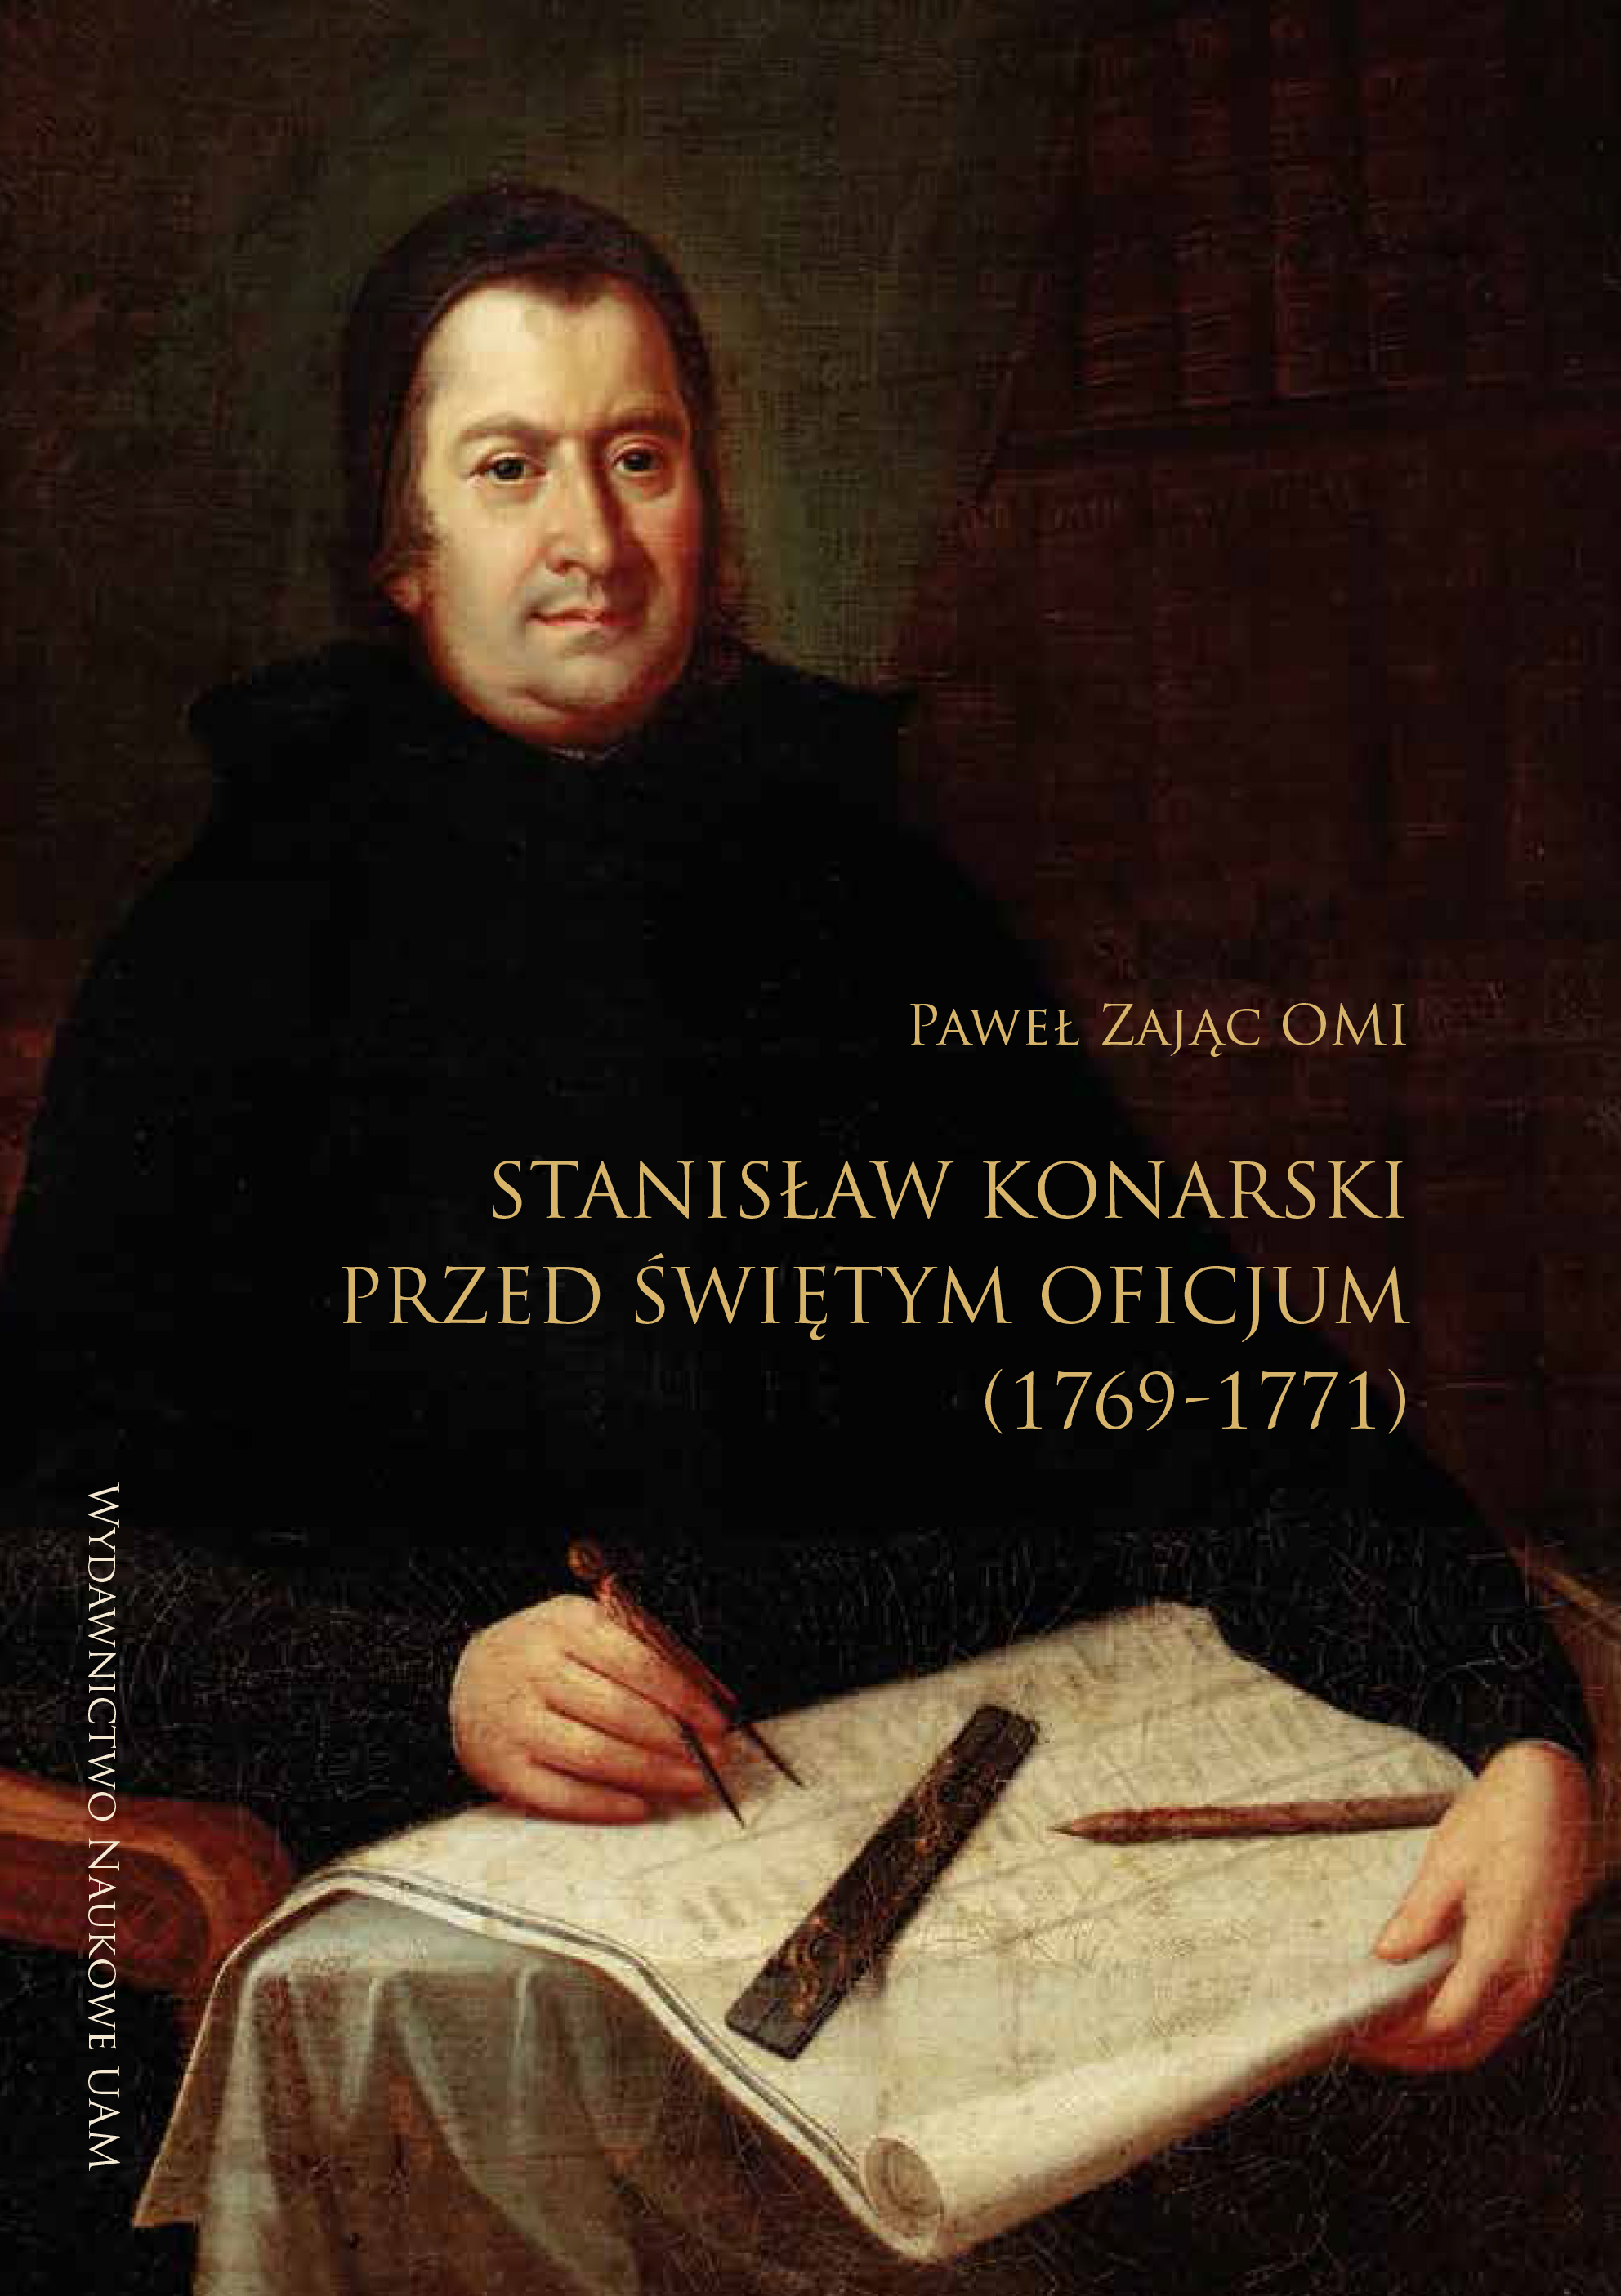 Stanisław Konarski before the Holy Office (1769–1771)